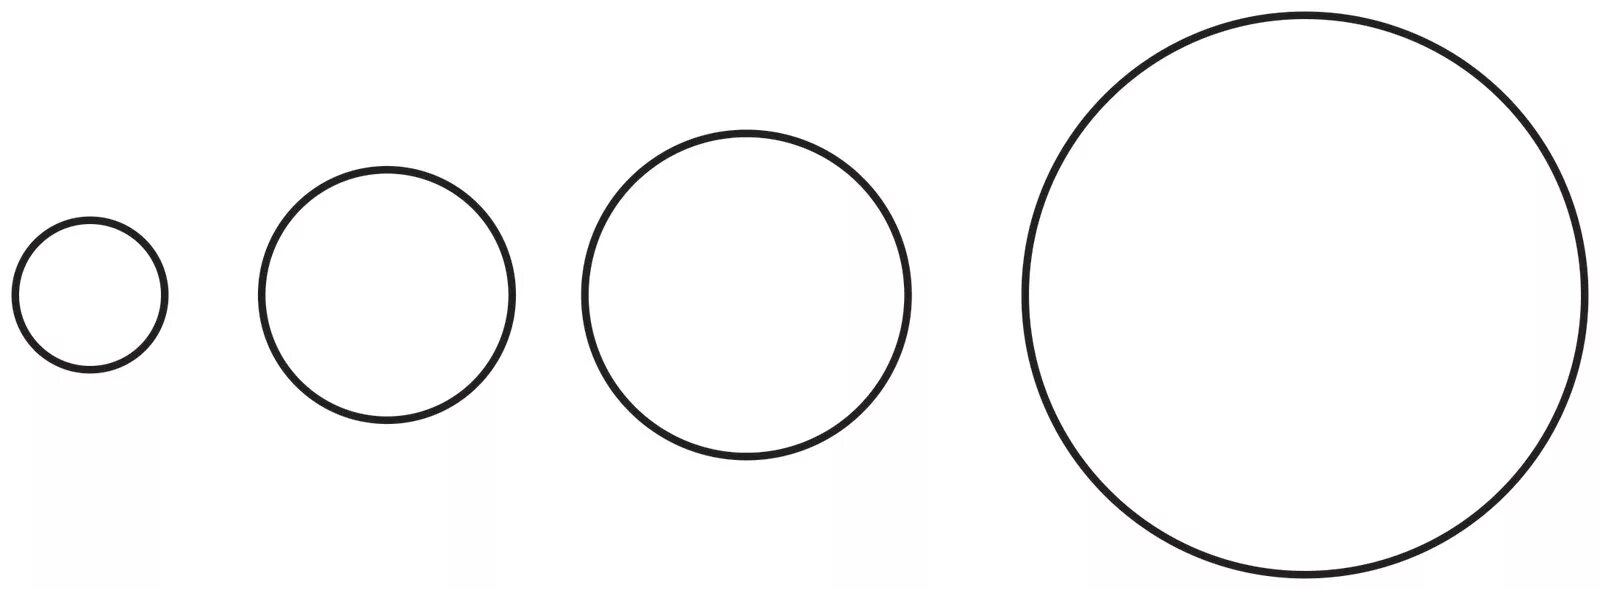 Коло 6. Трафарет круги. Трафарет кругов разного размера. Круг для вырезания. Круги разного диаметра.